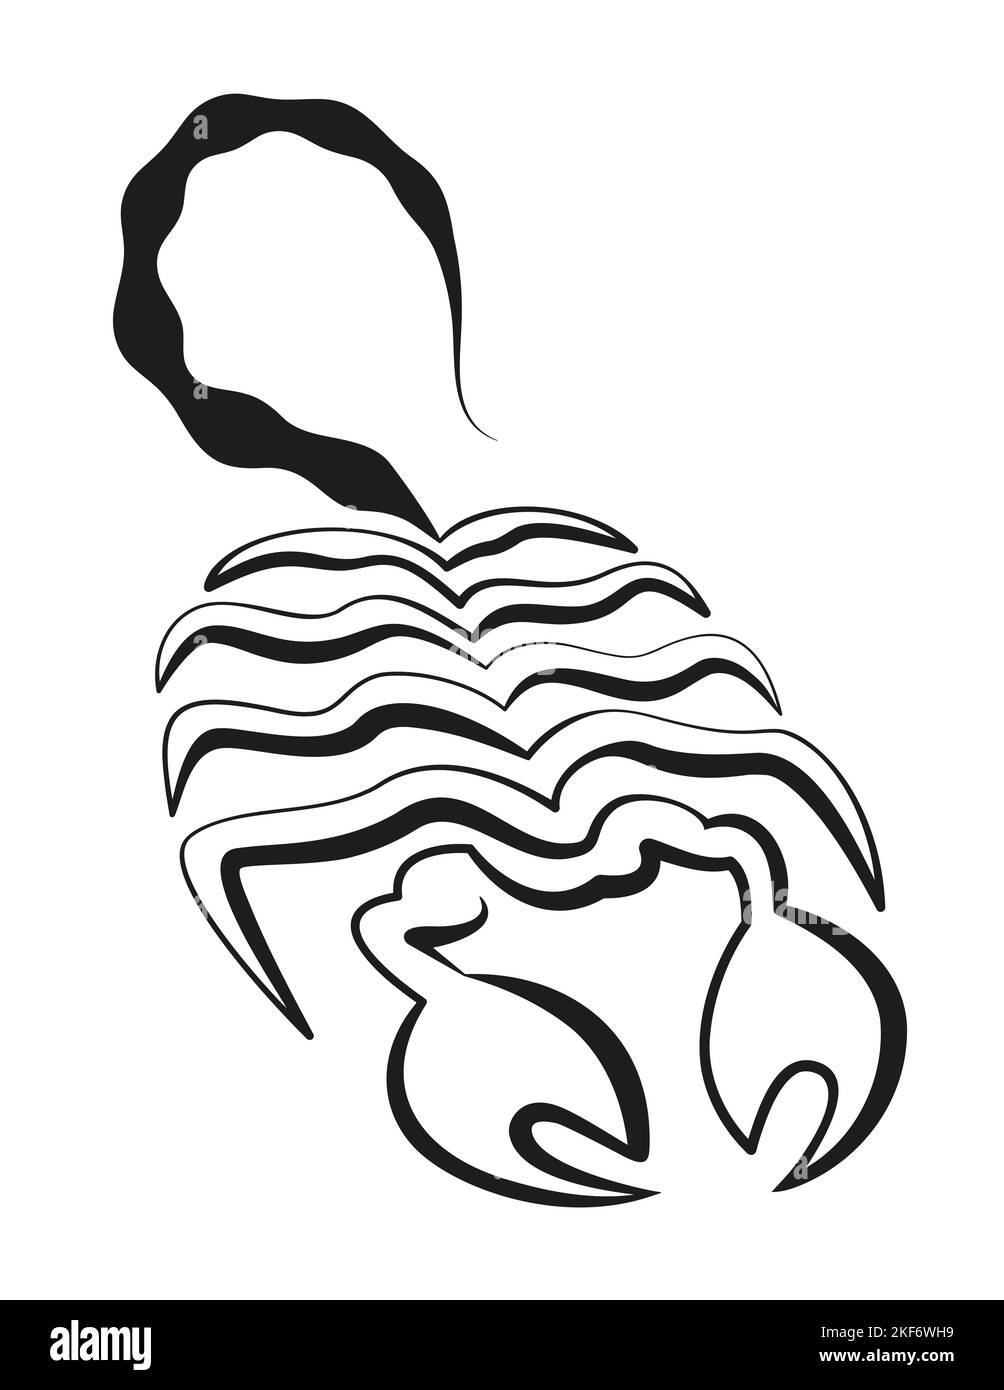 Schéma du symbole Scorpion - une seule ligne noire continue - illustration sur fond blanc. Banque D'Images